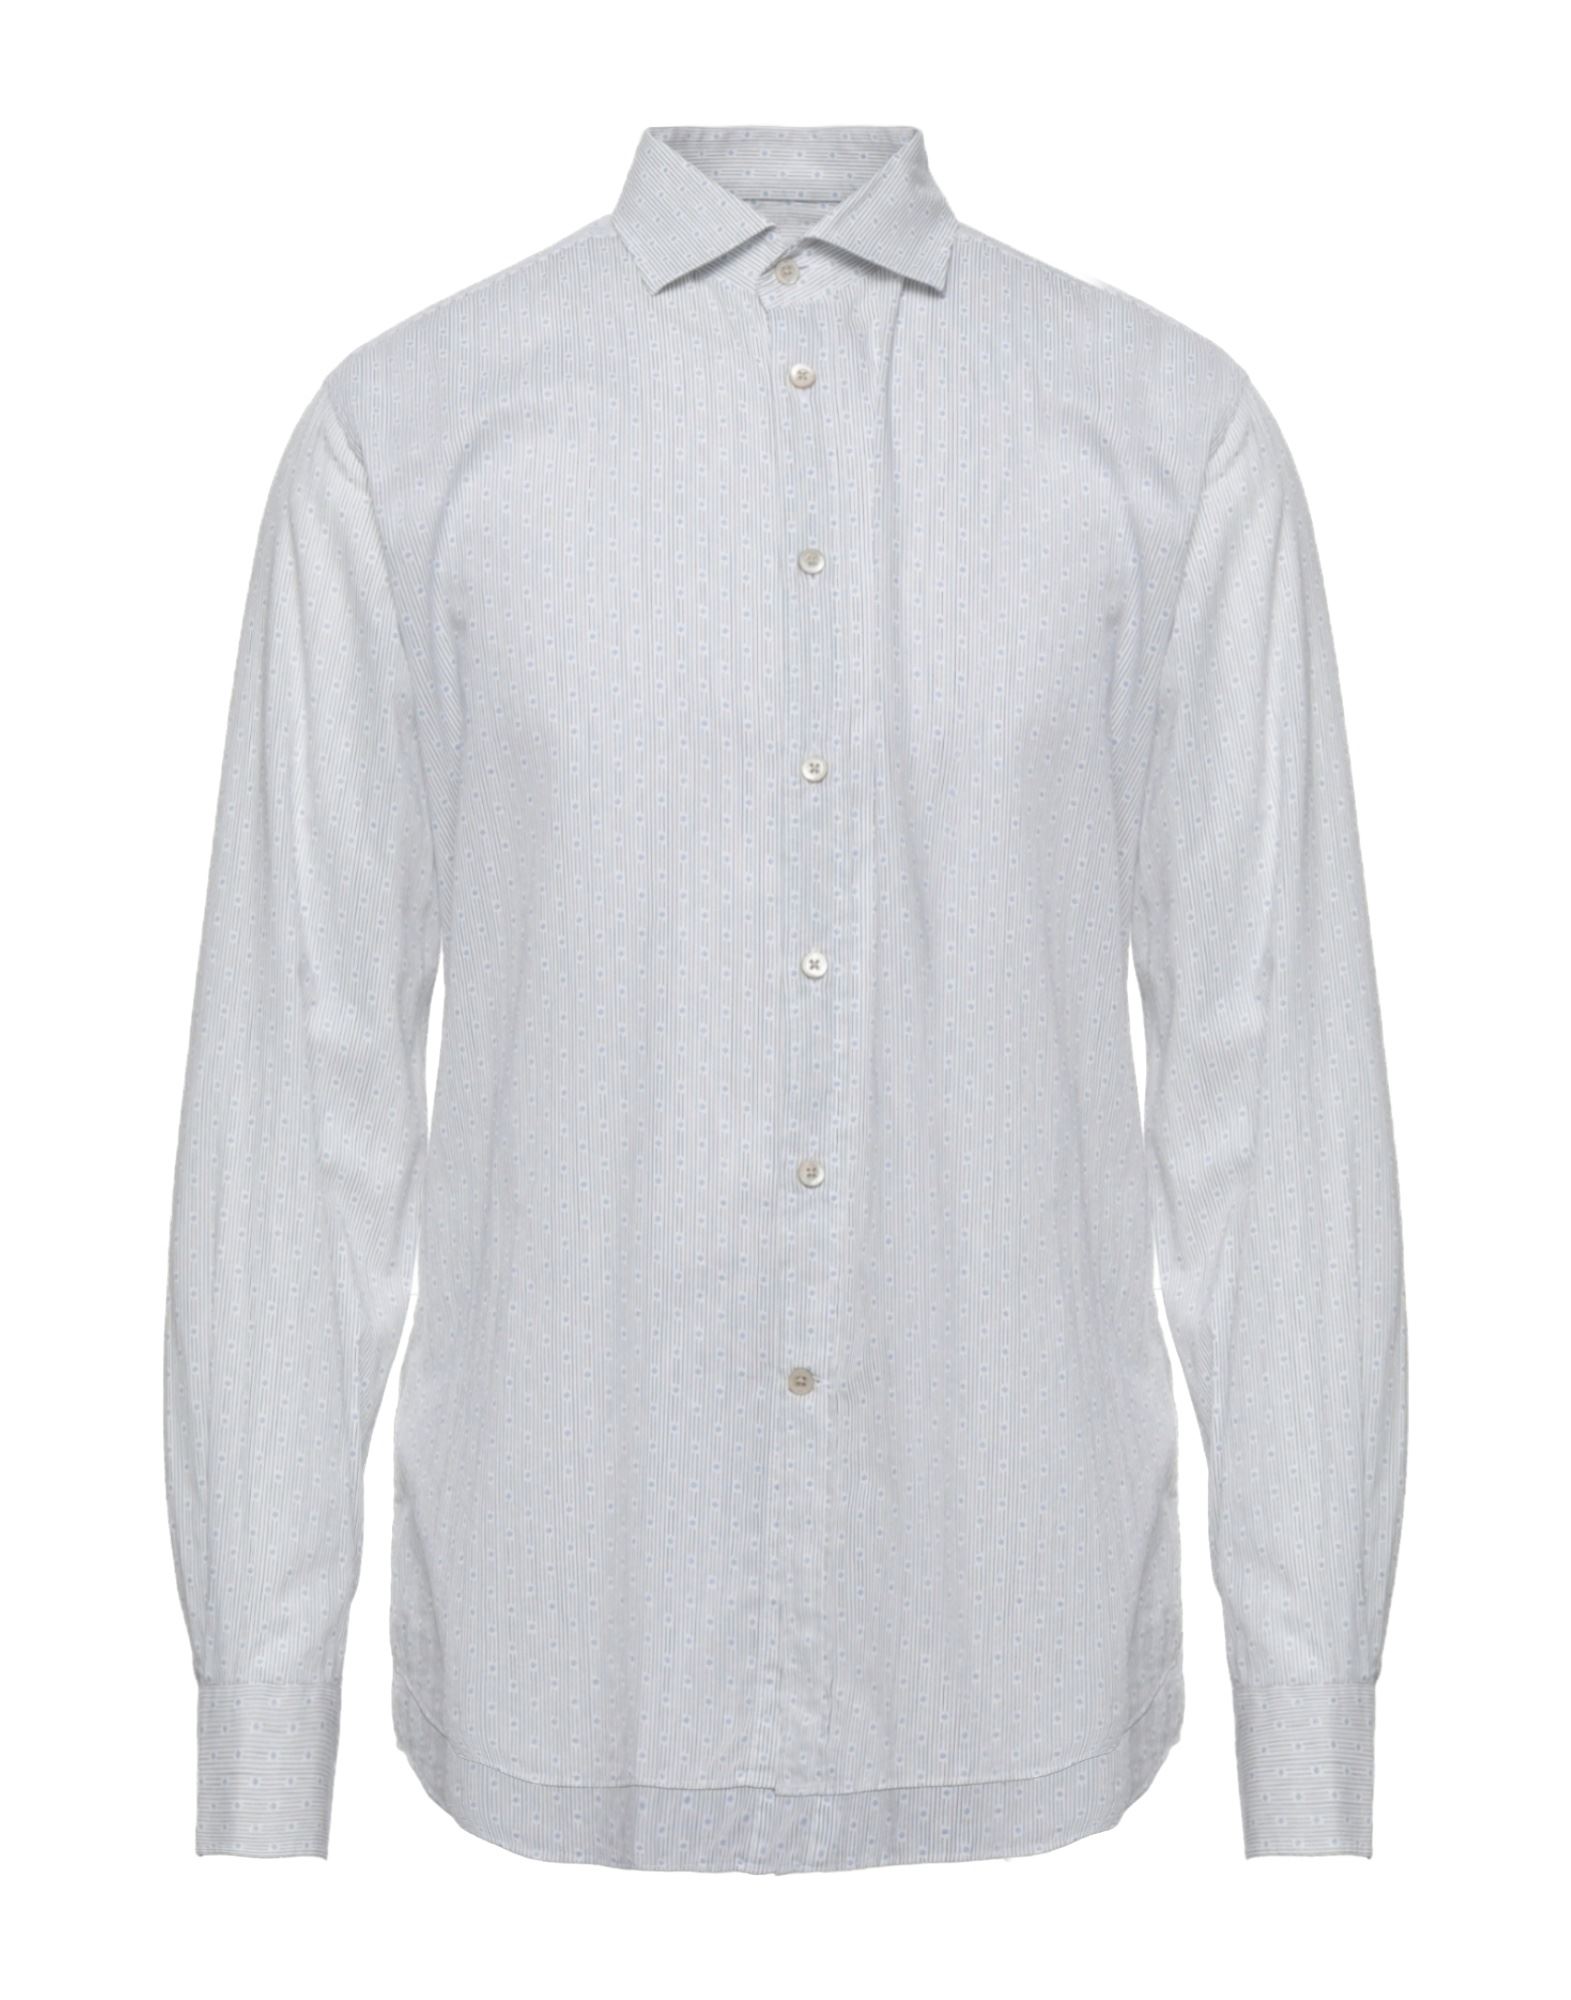 コルネリアーニ or CORNELIANI) メンズシャツ・ワイシャツ | 通販・人気ランキング - 価格.com